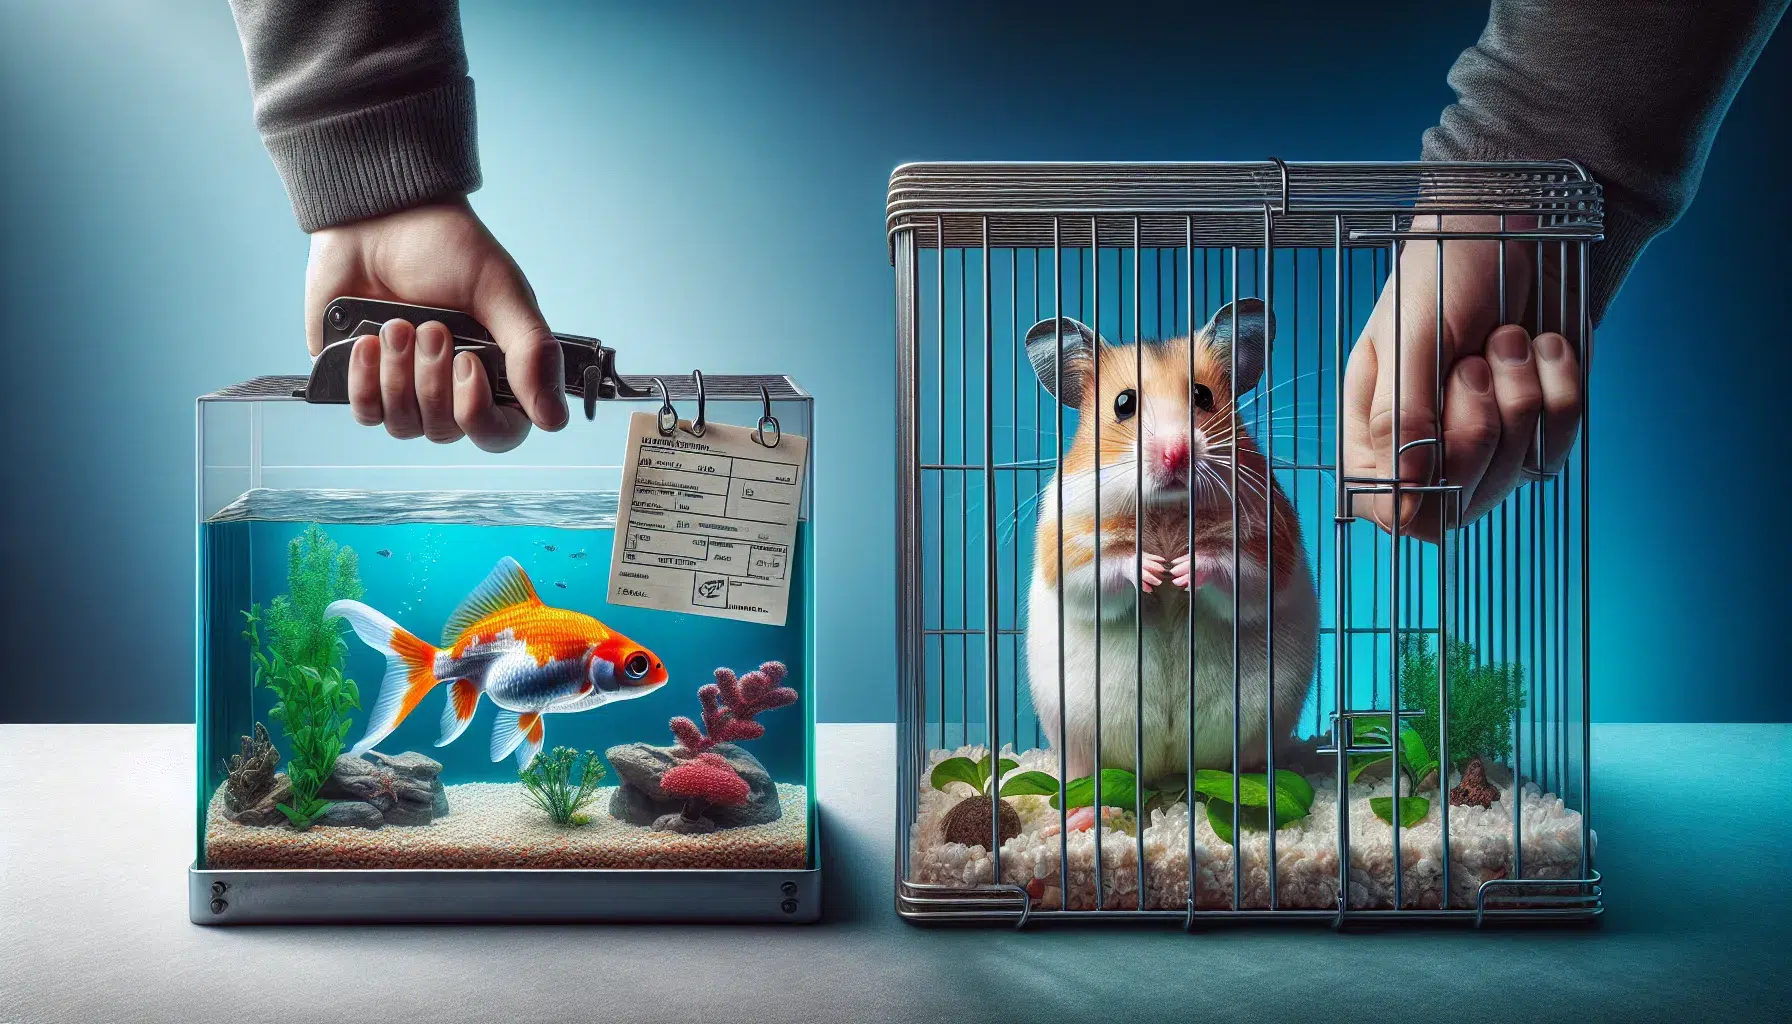 La imagen muestra a un pez nadando en un acuario y a un hámster en su jaula, ilustrando el impacto de la Ley en la tenencia de estos animales domésticos.